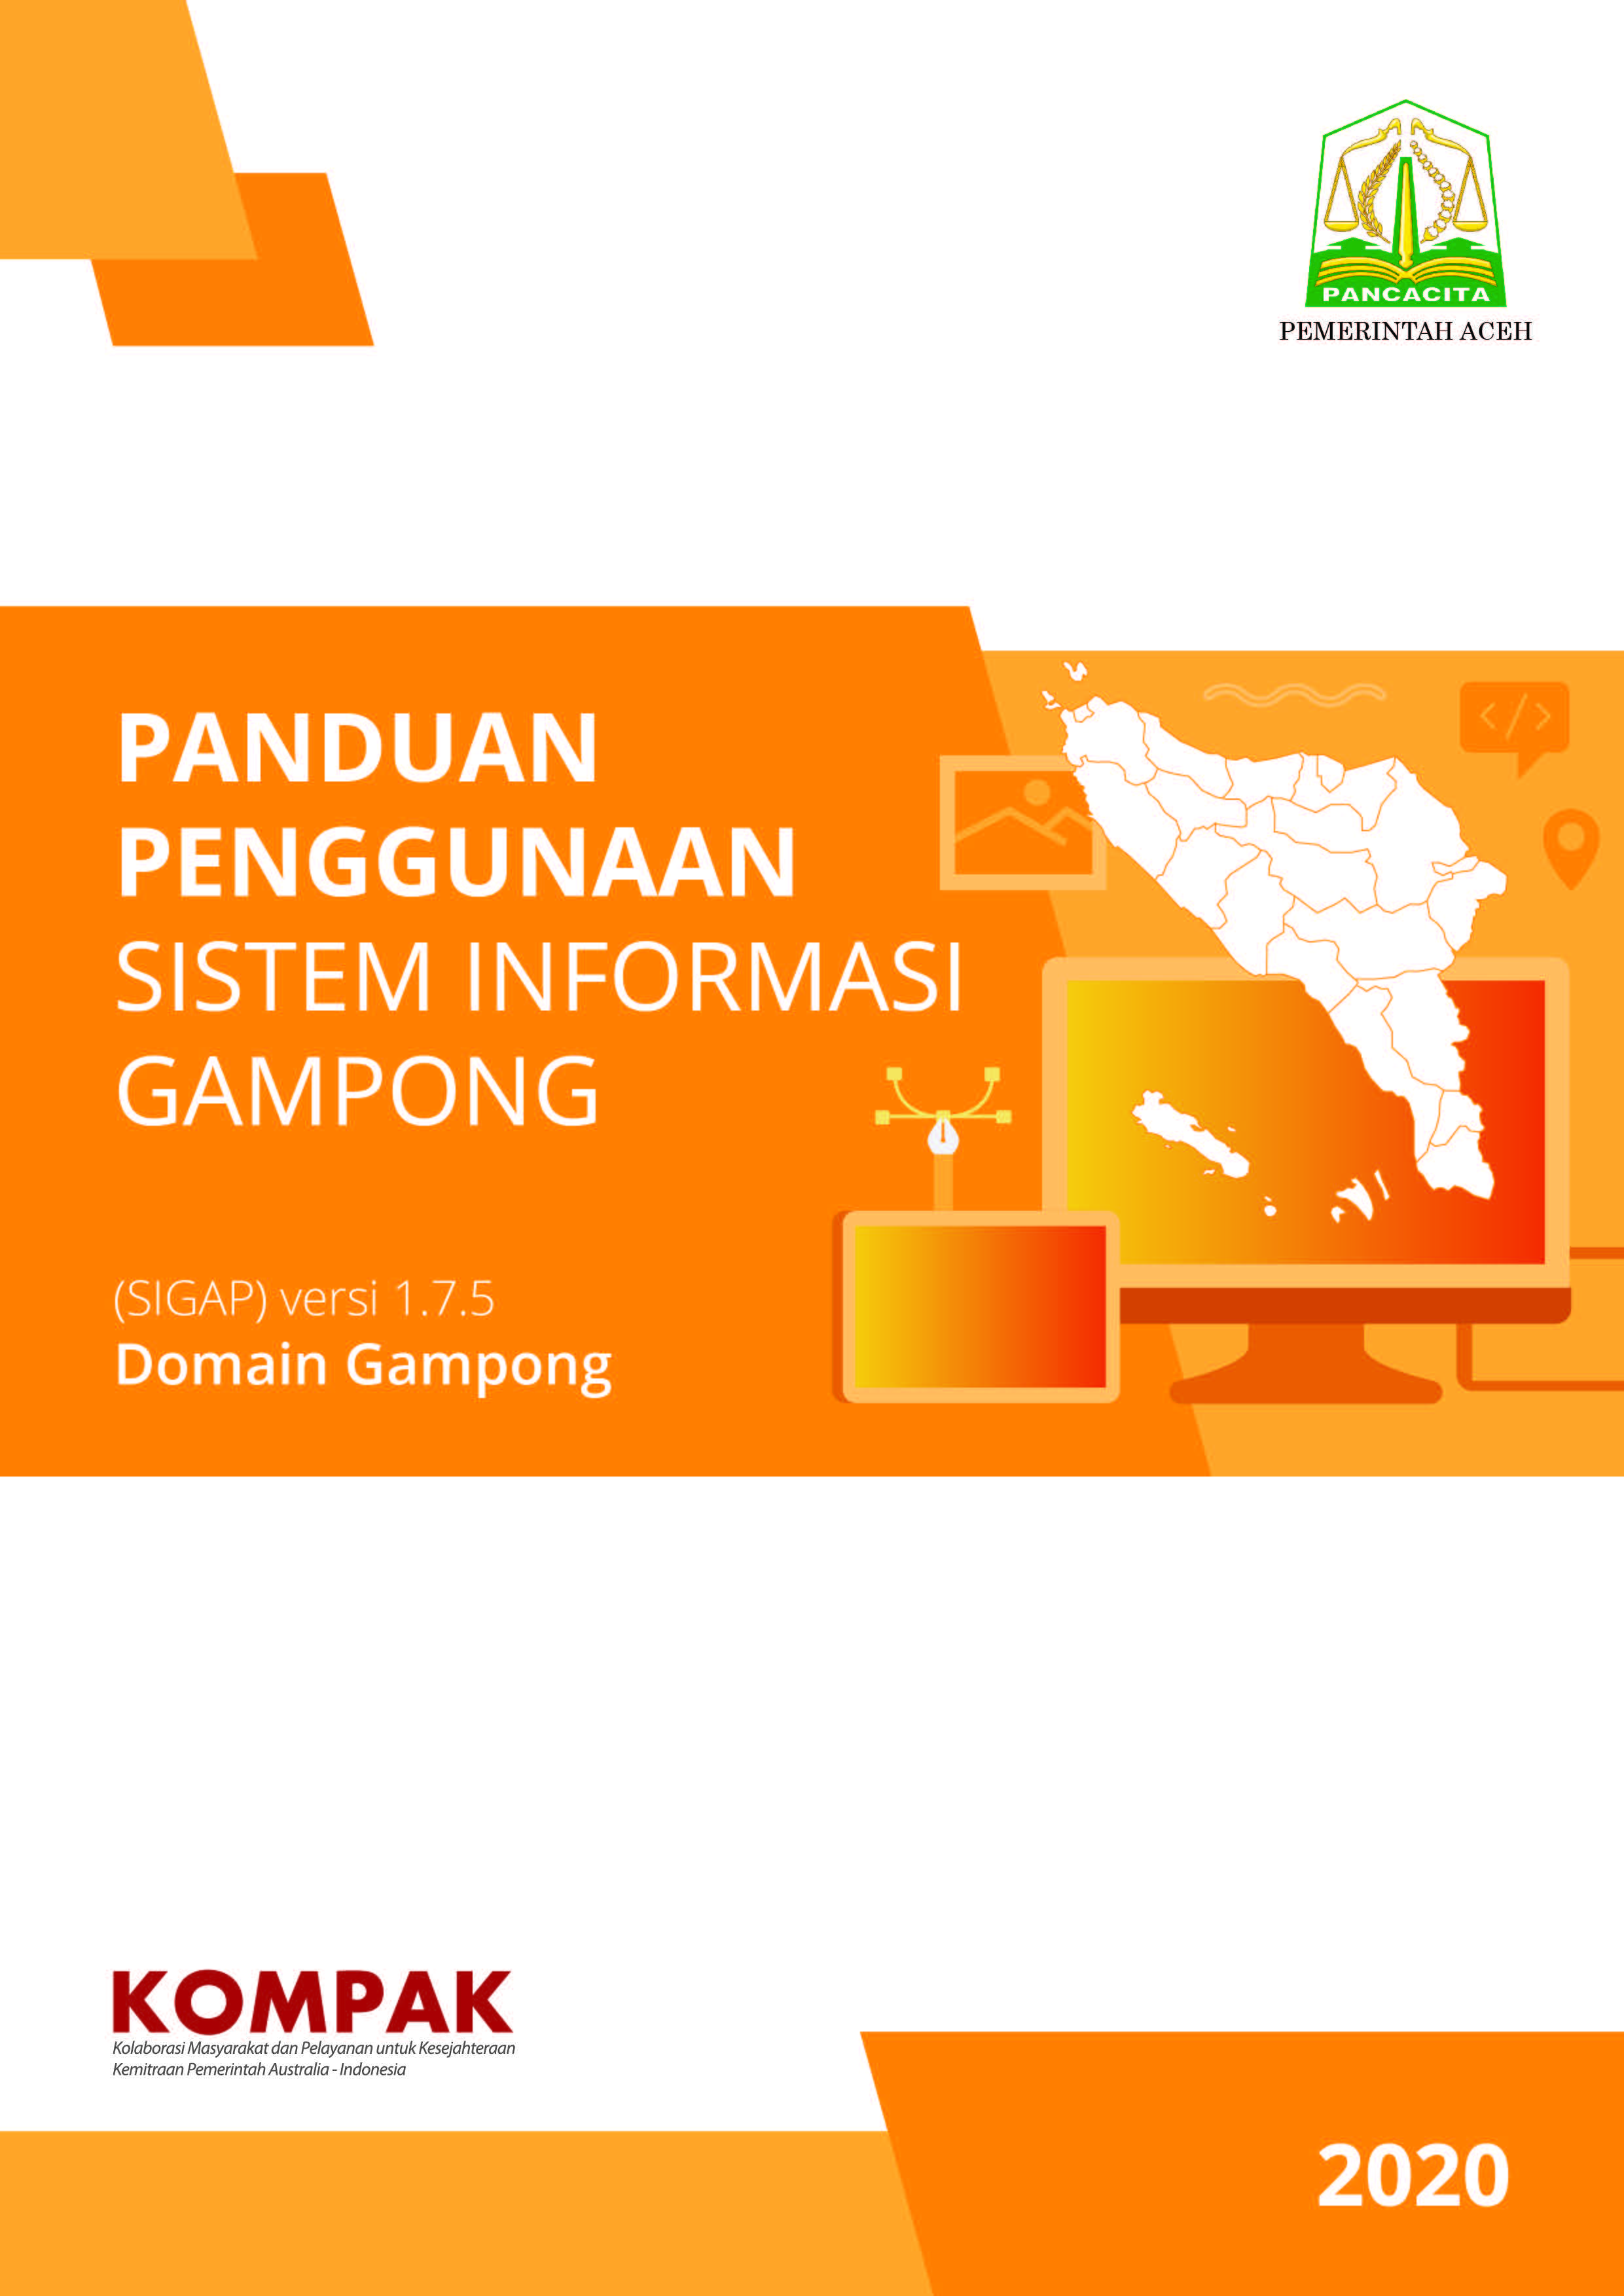 Panduan Penggunaan Sistem Informasi Gampong (SIGAP) Domain Gampong